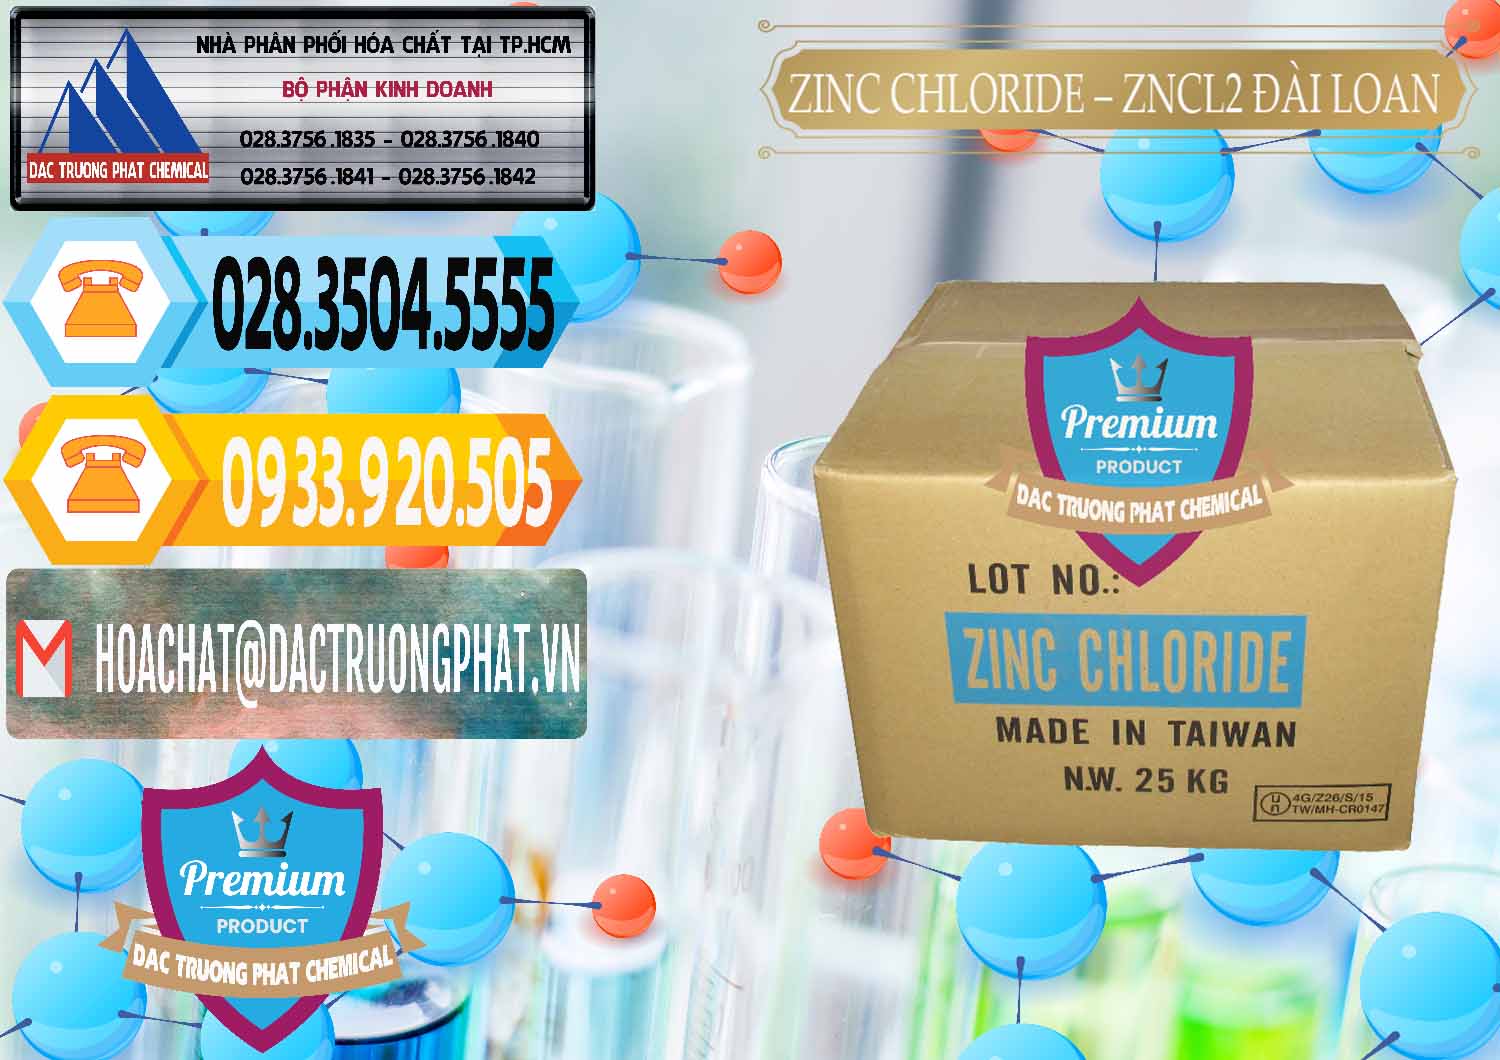 Chuyên cung cấp và bán Zinc Chloride - ZNCL2 96% Đài Loan Taiwan - 0178 - Đơn vị chuyên cung ứng ( phân phối ) hóa chất tại TP.HCM - hoachattayrua.net